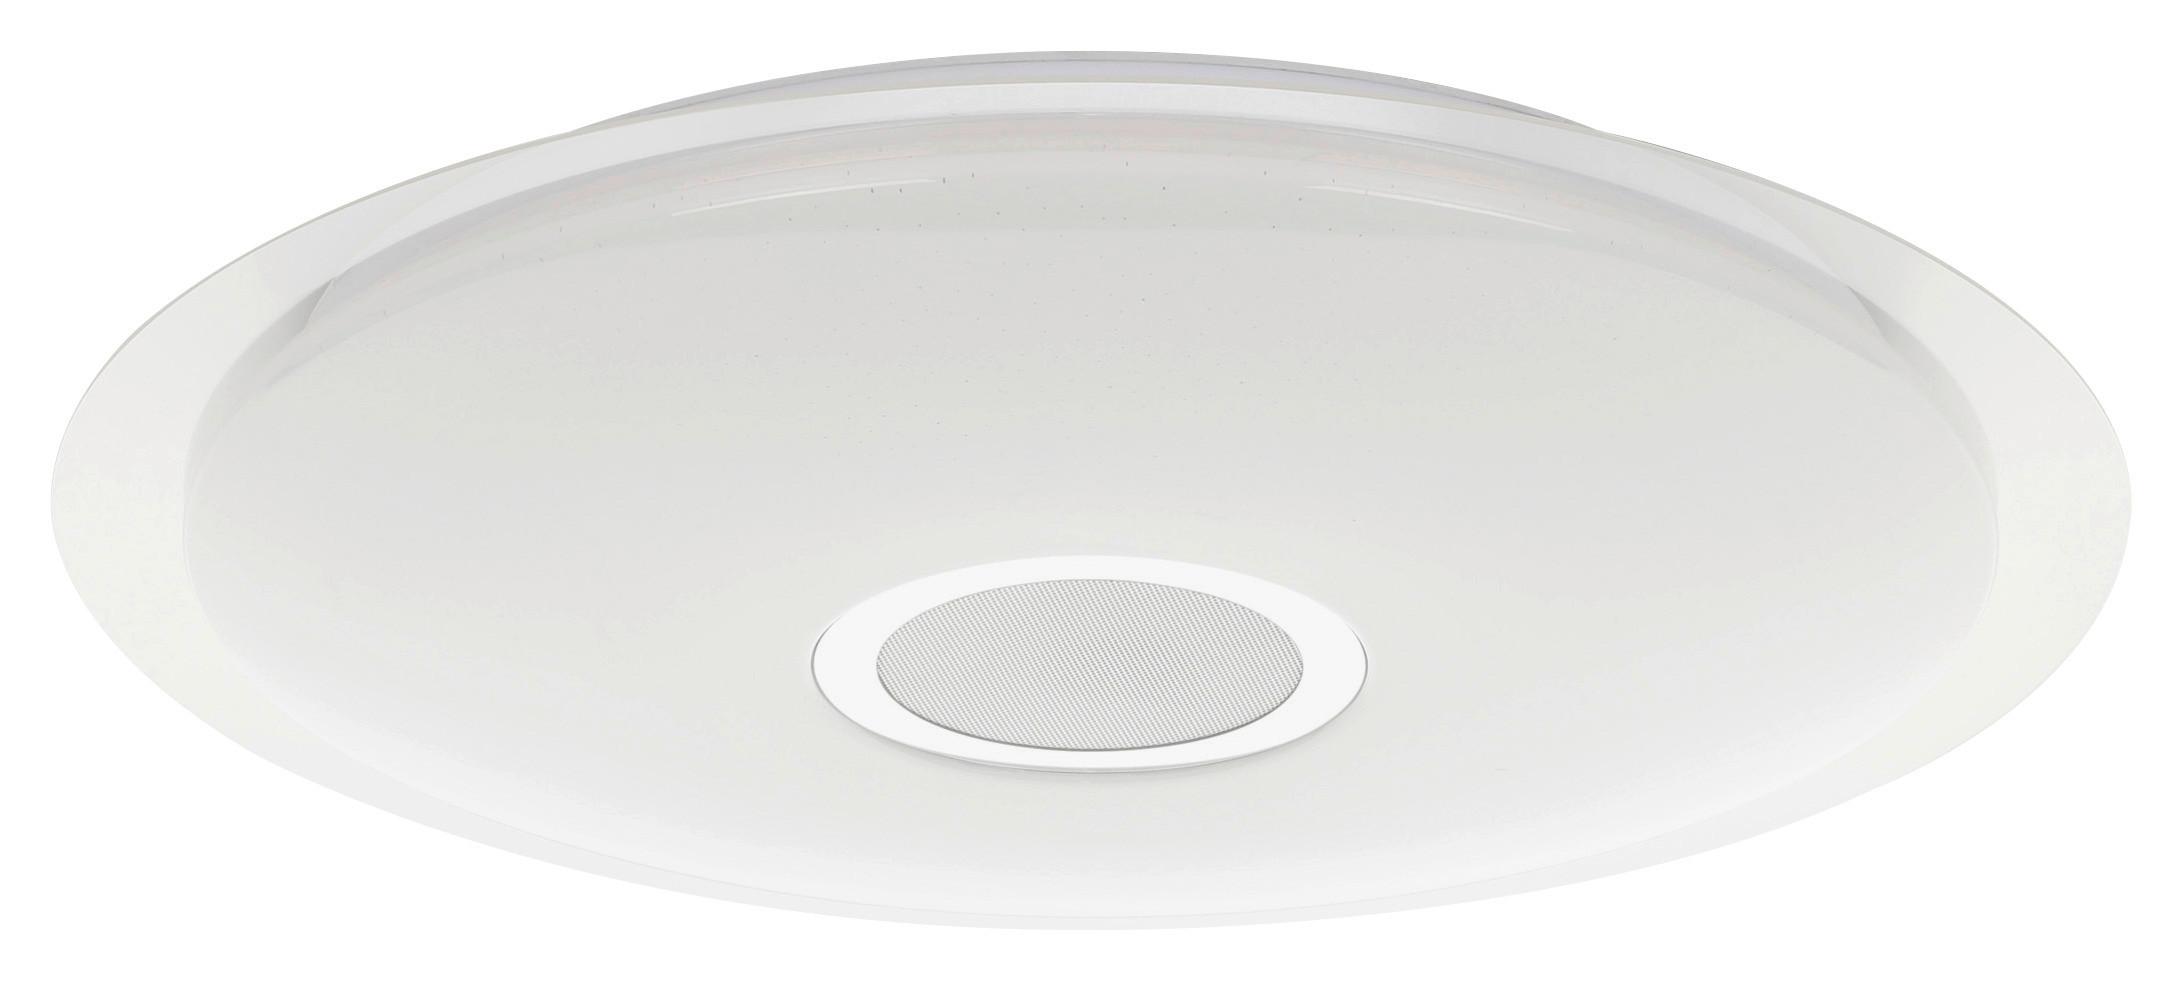 LED-Deckenleuchte Lanciano-S Ø 56 cm Bluetooth-Lautsprecher - Klar/Weiß, Basics, Kunststoff/Metall (56/8cm)